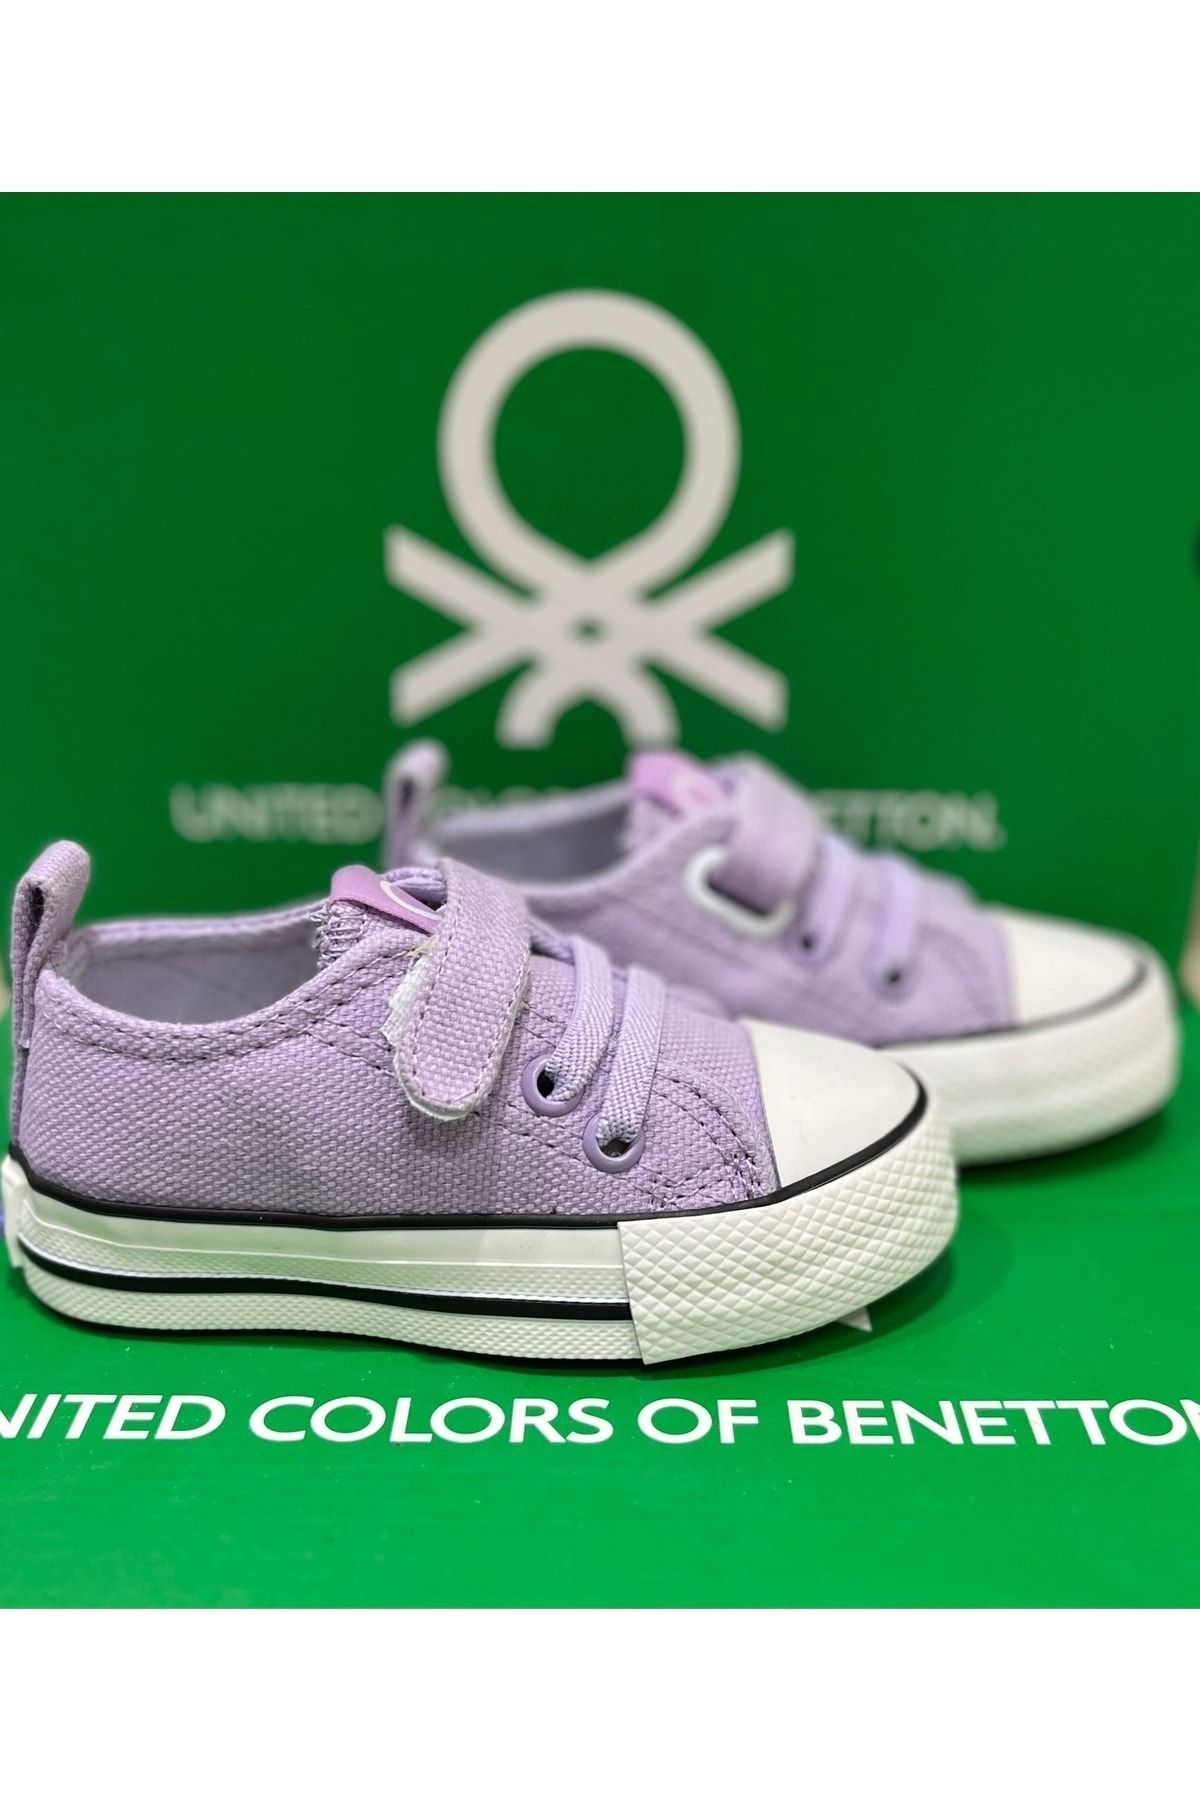 Benetton Mega Ayakkabı